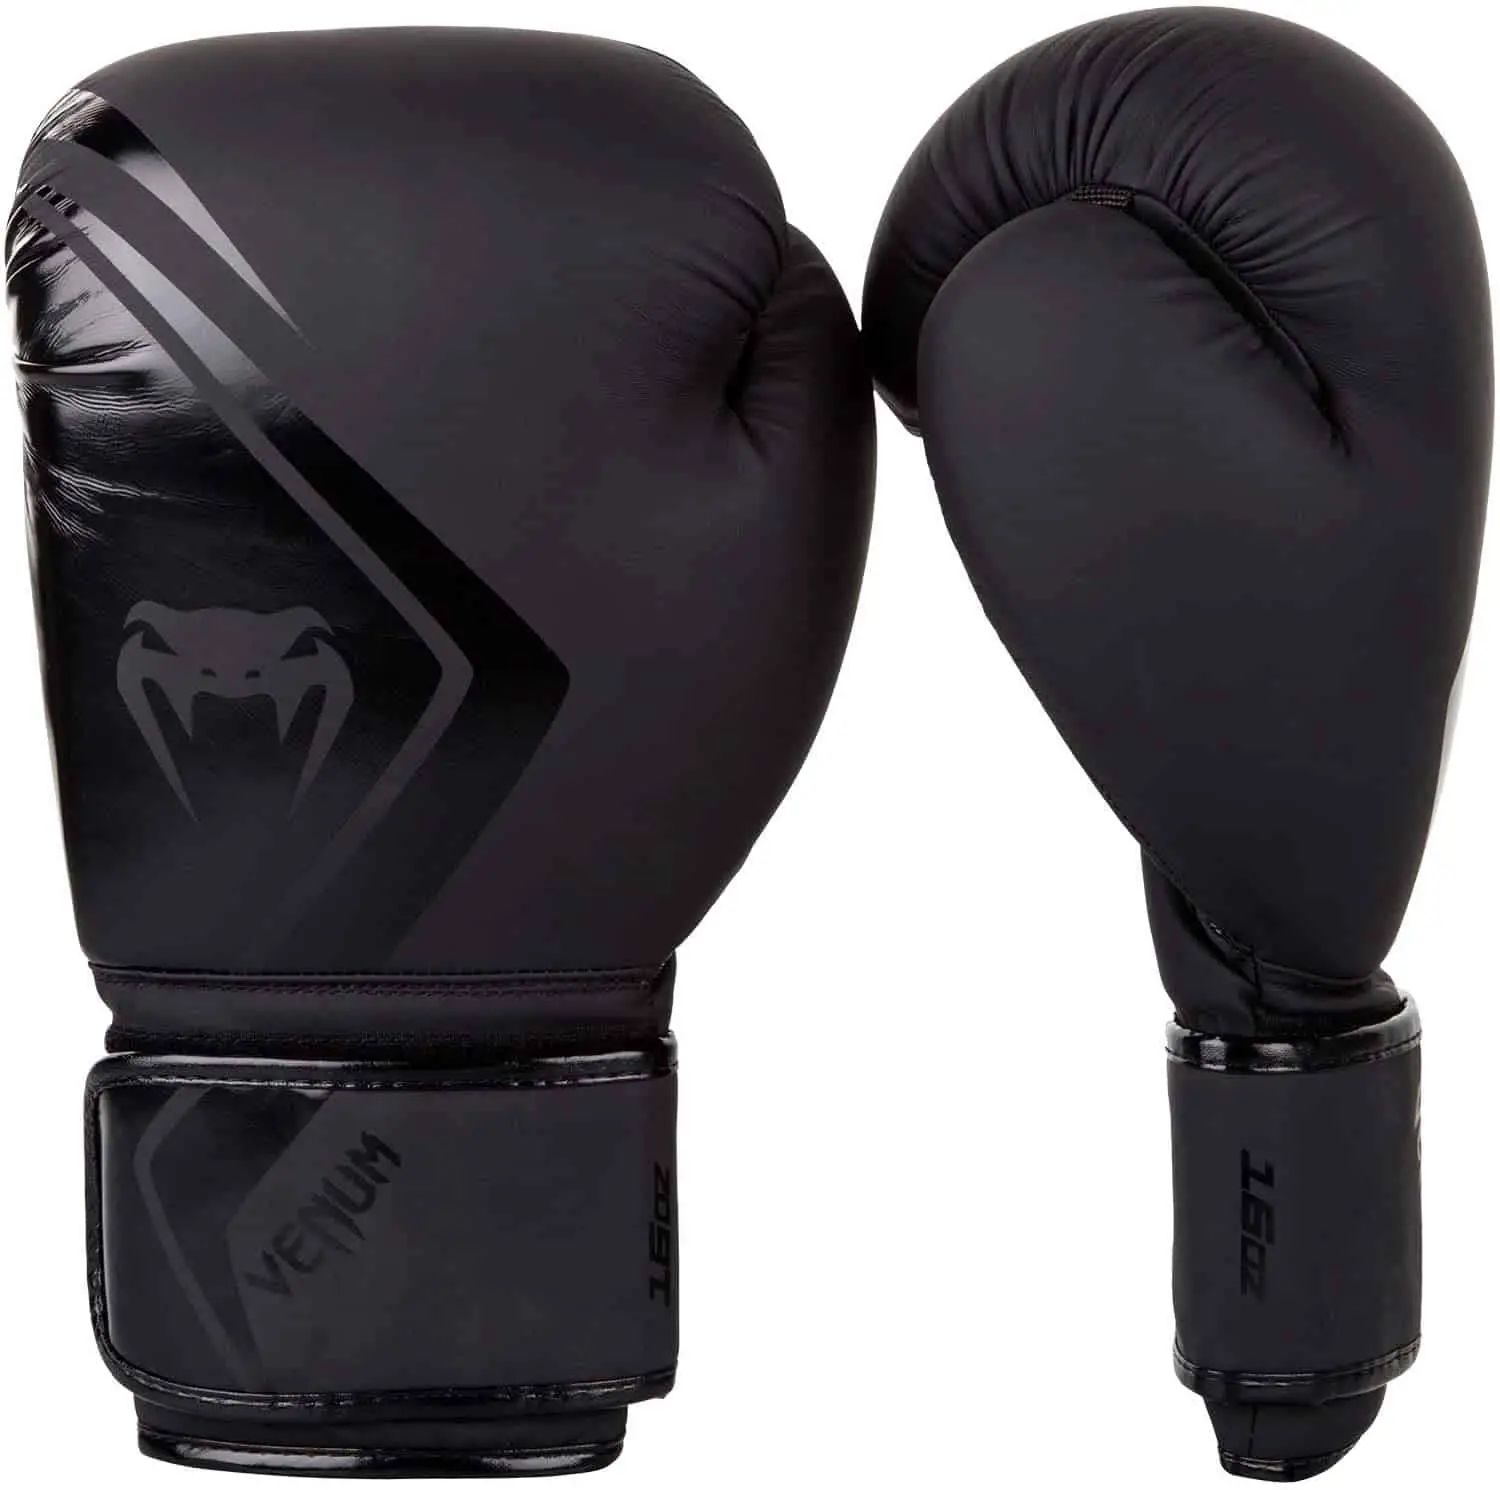 Beste goedkope Muay Thai handschoenen: Venum Contender